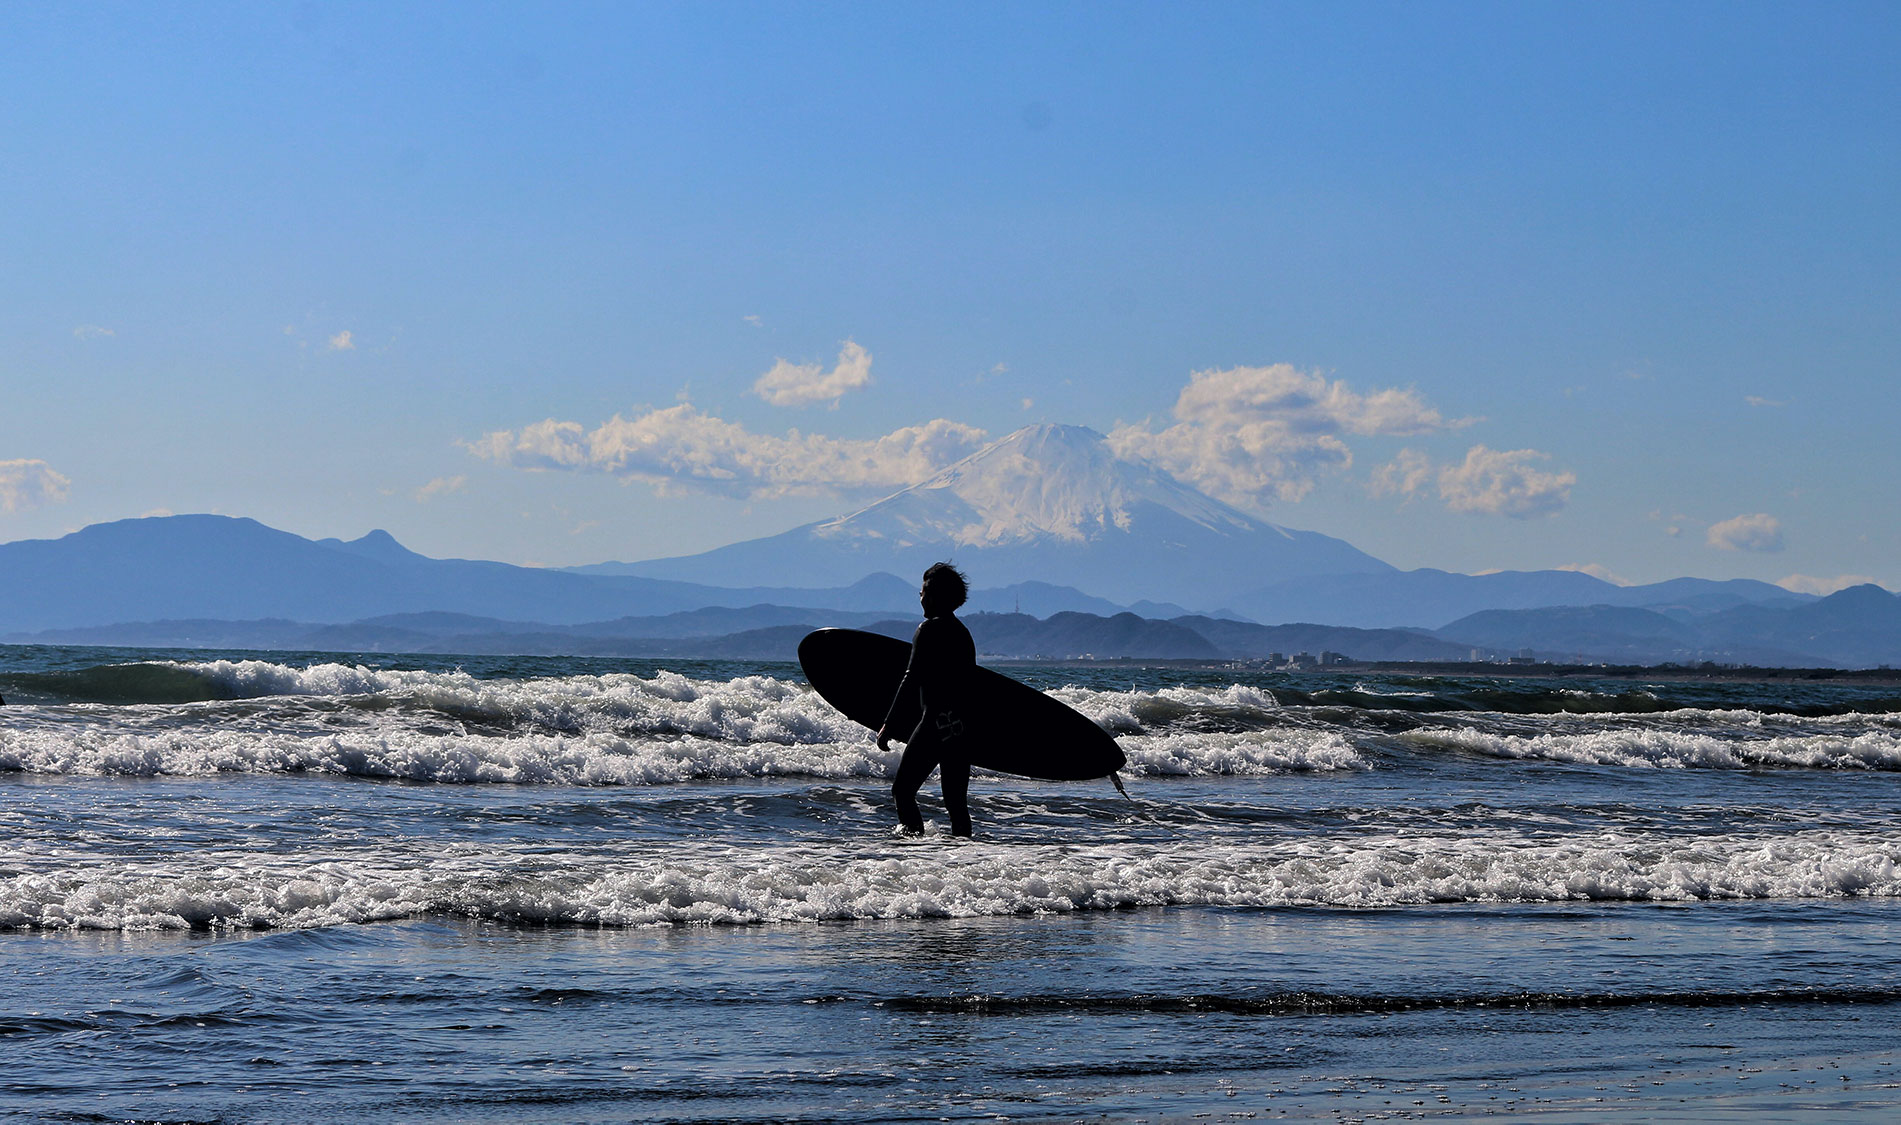 Im Sommer verwandeln sich Japan Strände in ein Paradies für Surfer. 8Foto Ye Linn Wai auf unsplash https://unsplash.com/photos/Z5Pu-eFSq5w)